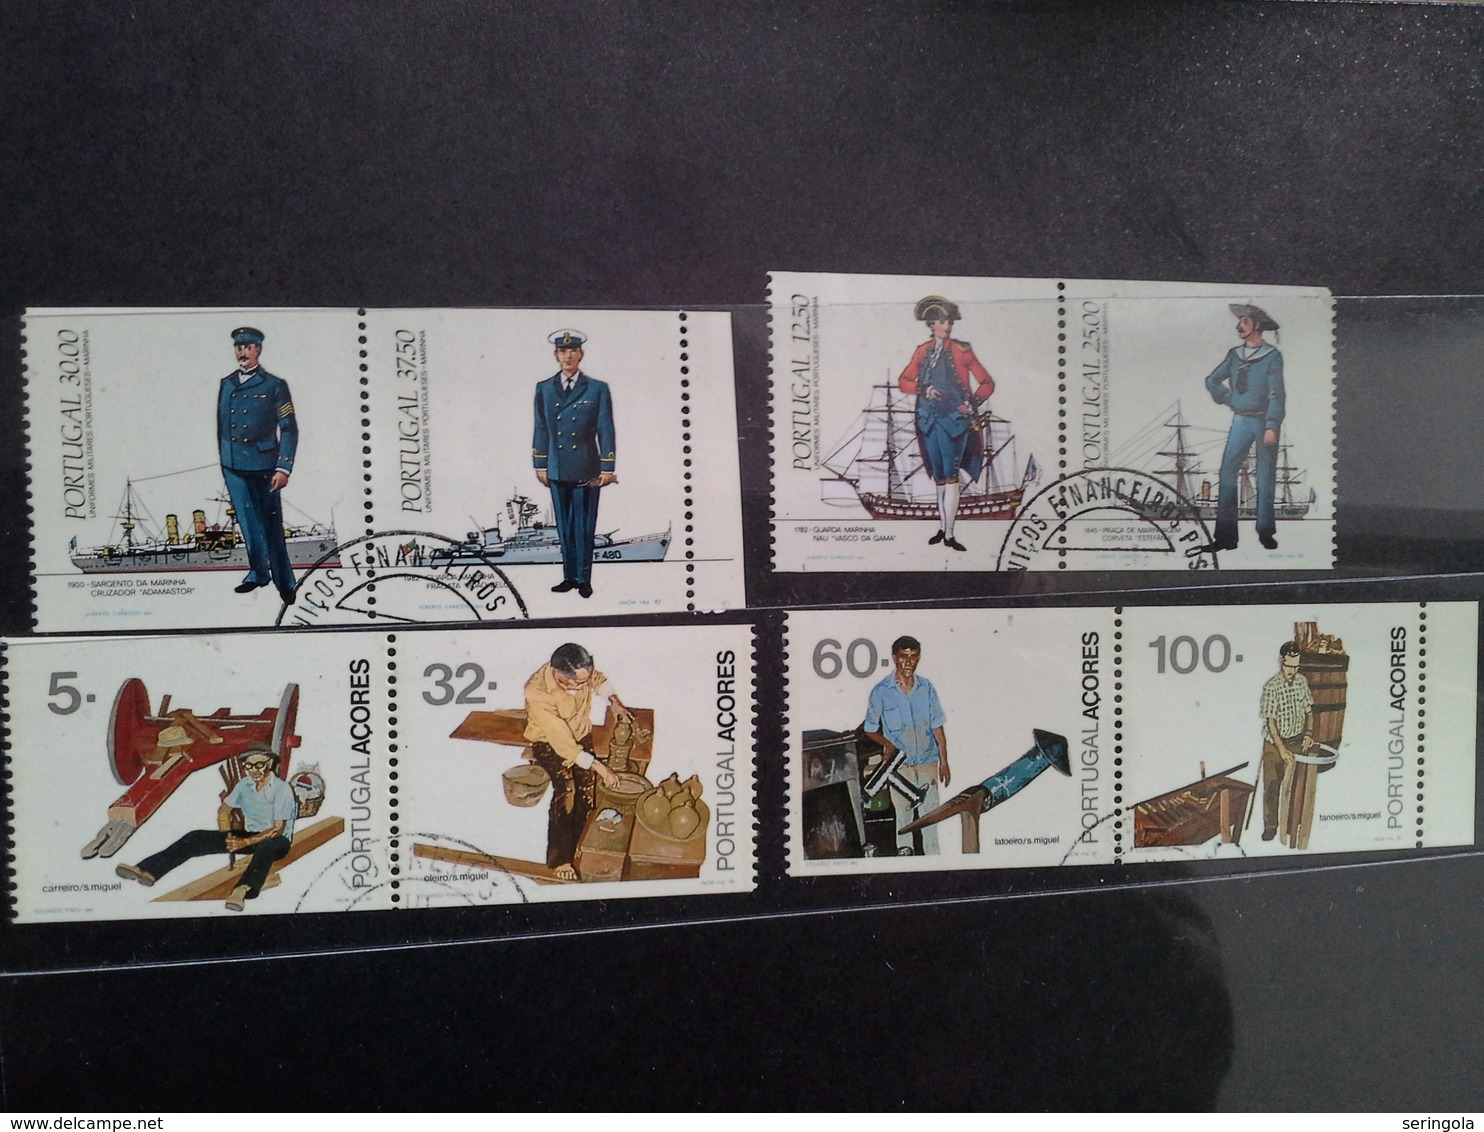 Lot stamps Portugal perfurado vertical